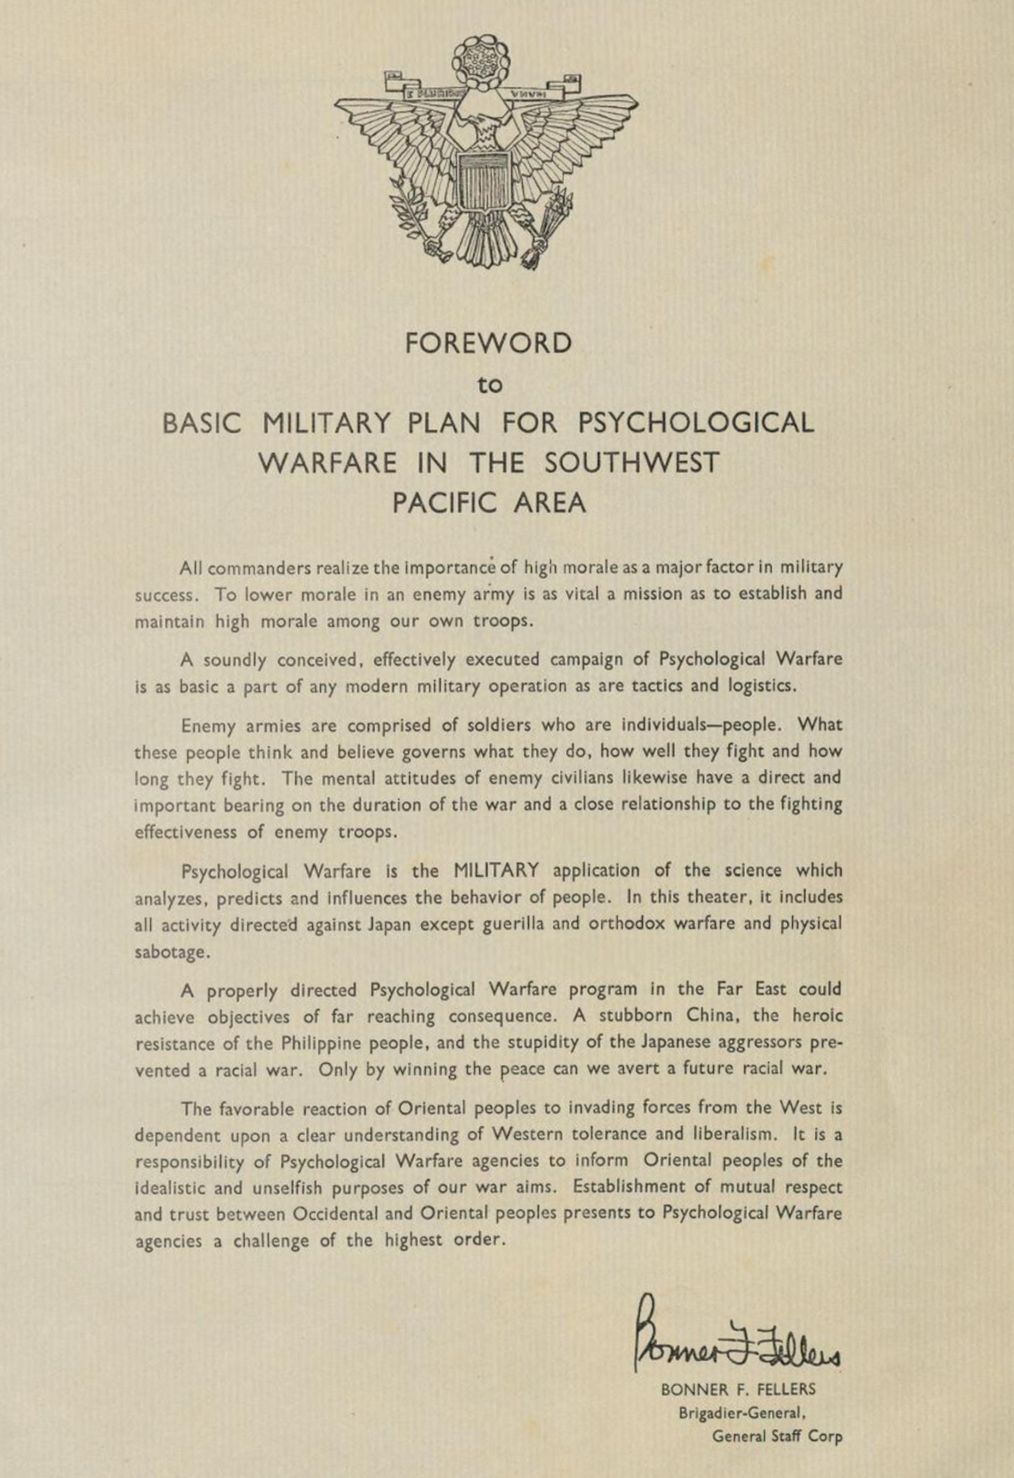 Bonner Frank Fellers u0026 Psychological Warfare Leaflets in World War II